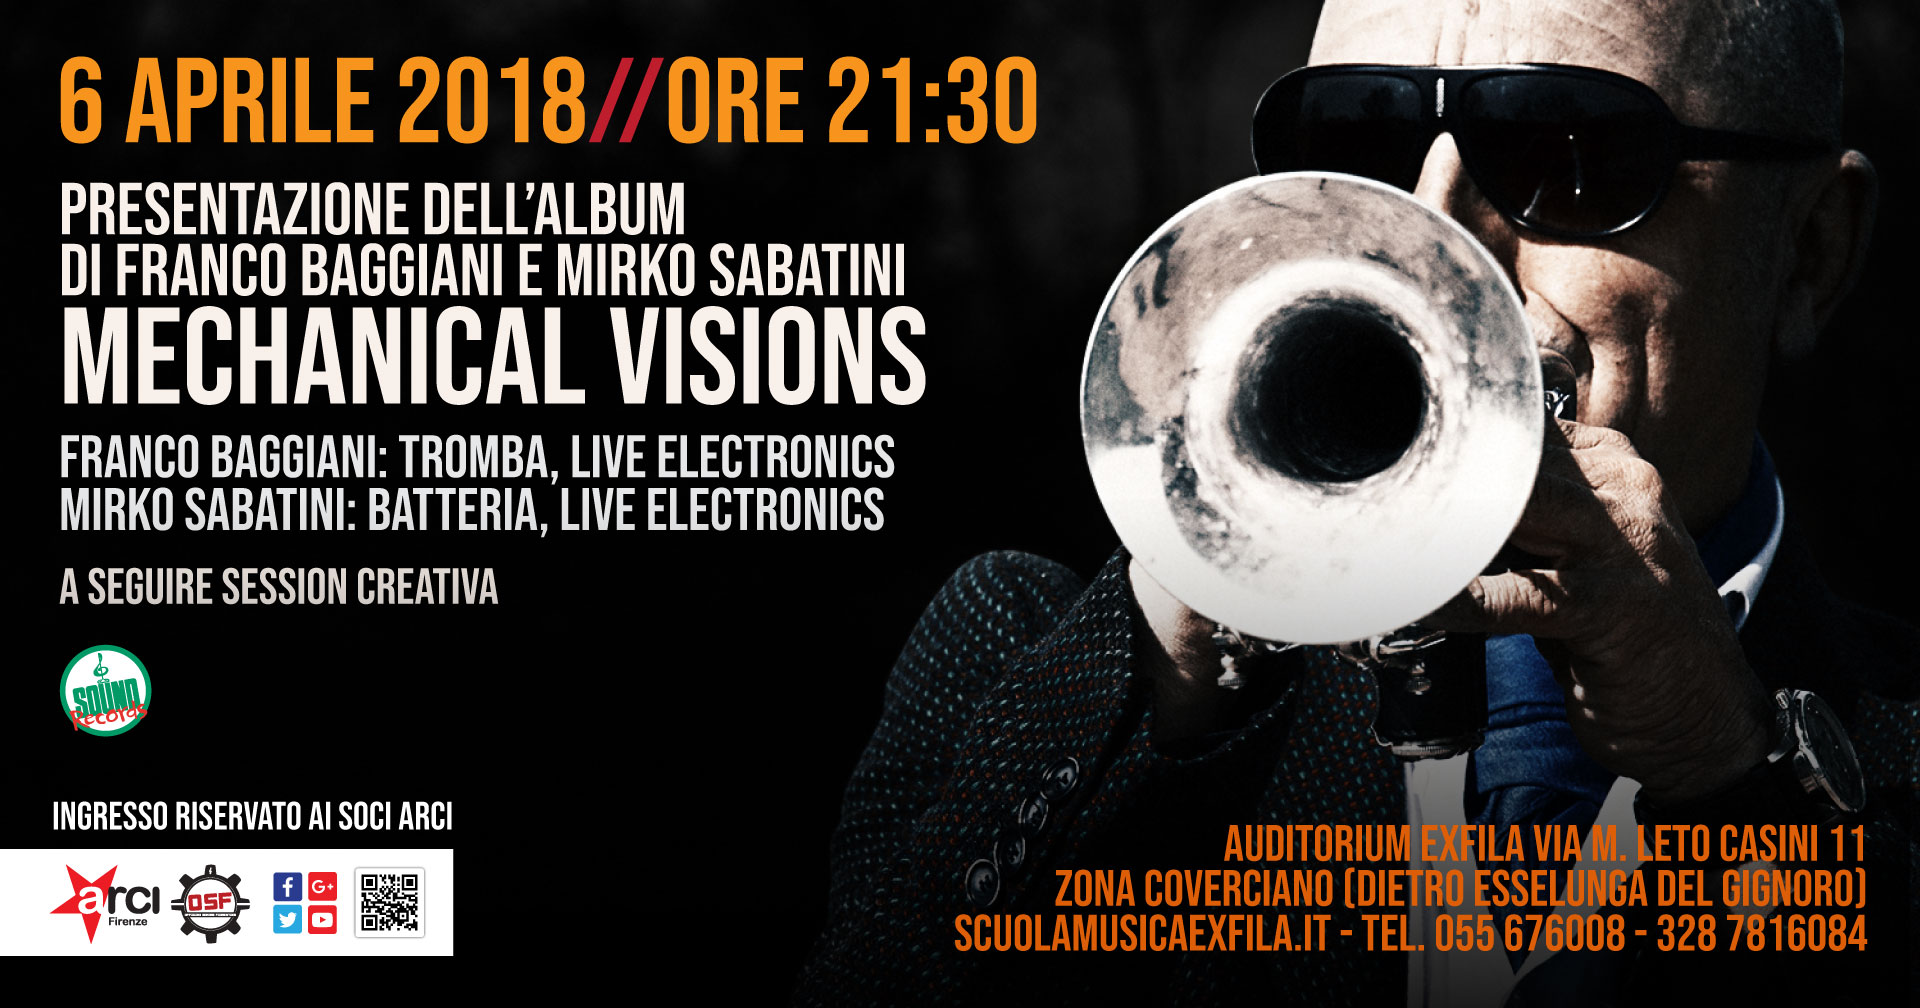 Presentazione dell'album di Franco Baggiani e Mirko Sabatini Mechanical Visions 6 Aprile 2018 Auditorium ExFila ore 21:30